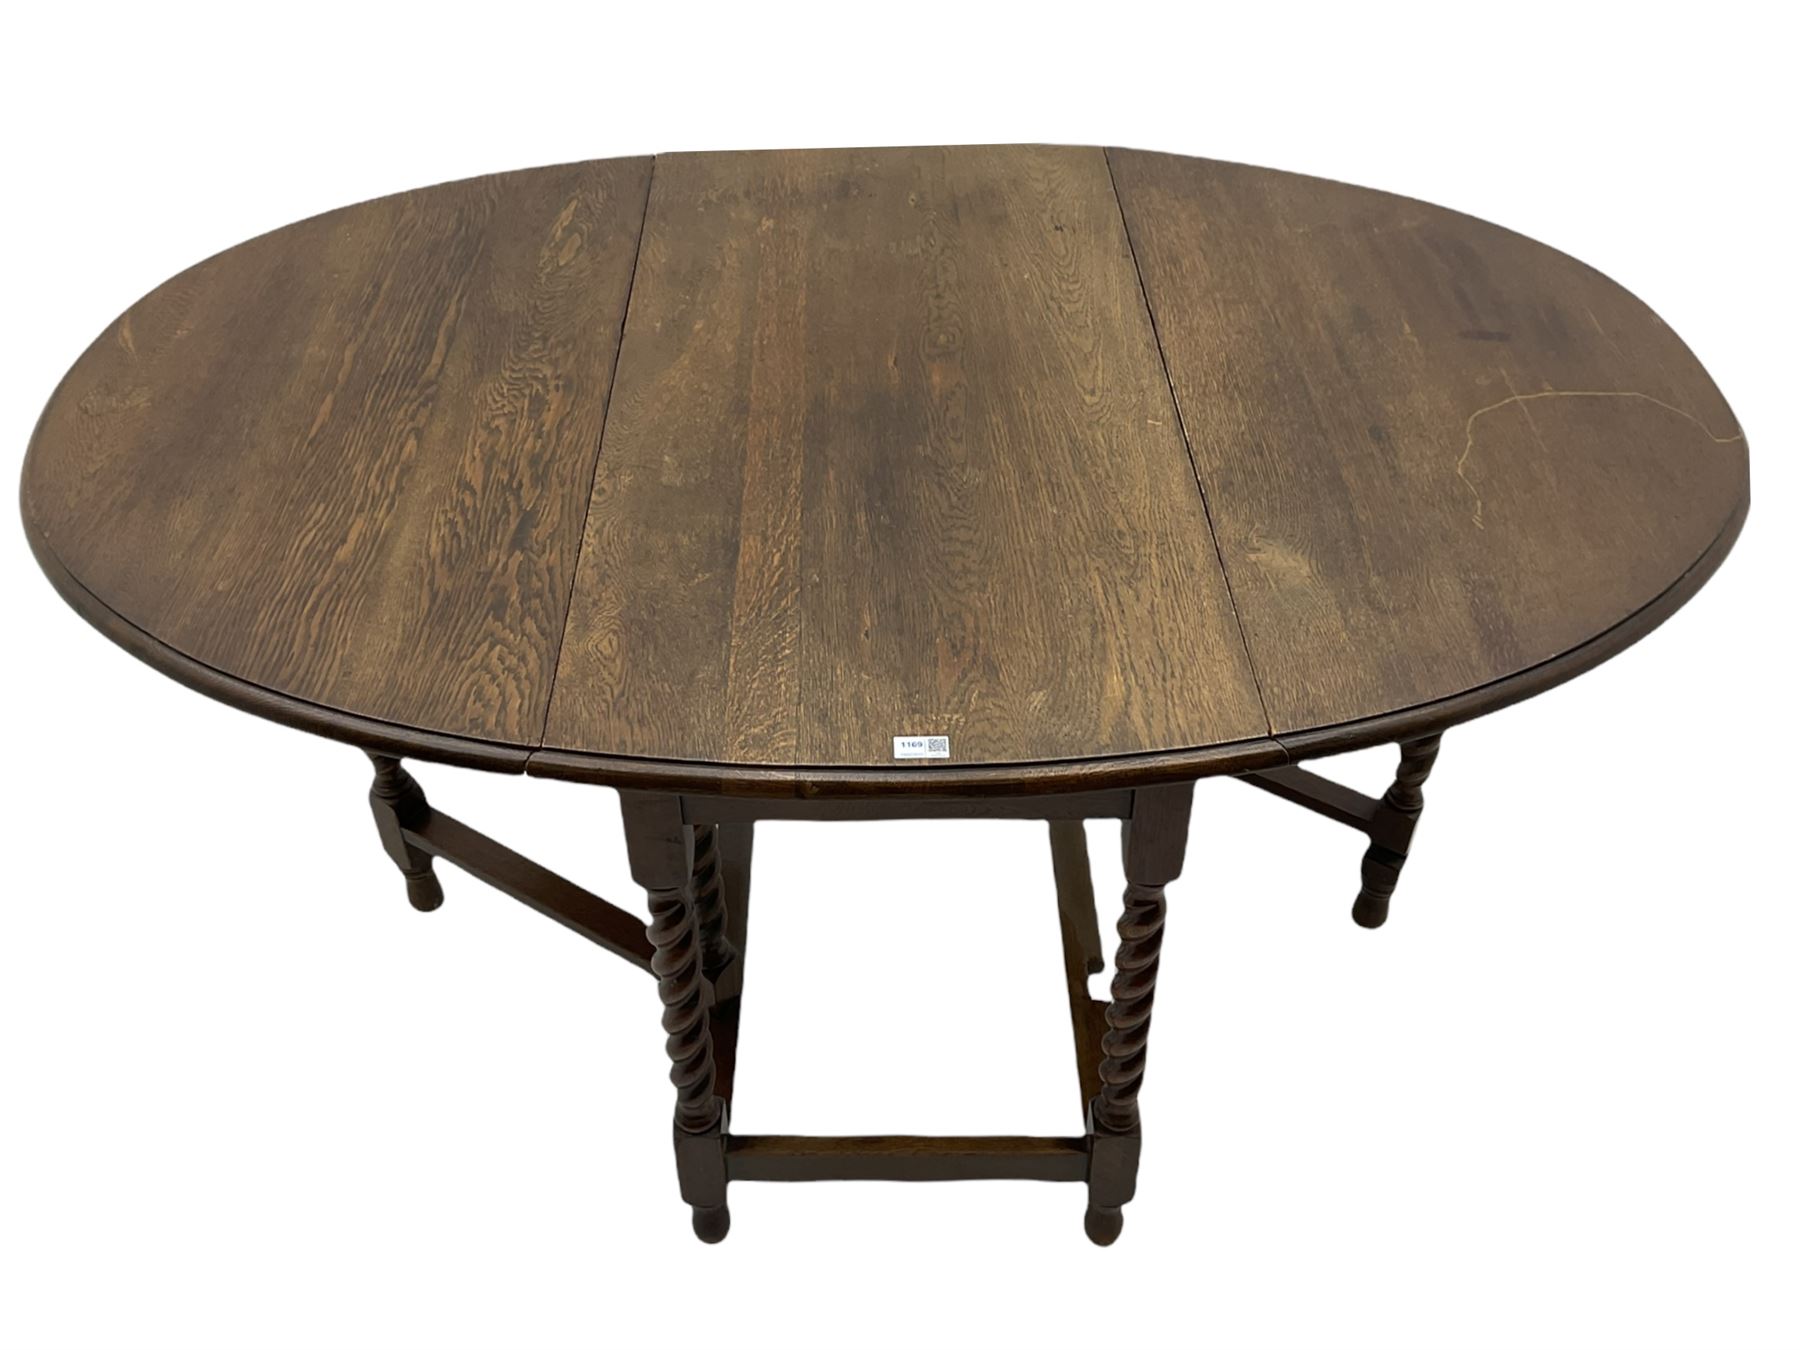 Early 20th century oak barley twist drop leaf dining table (105cm x 154cm - Image 8 of 24